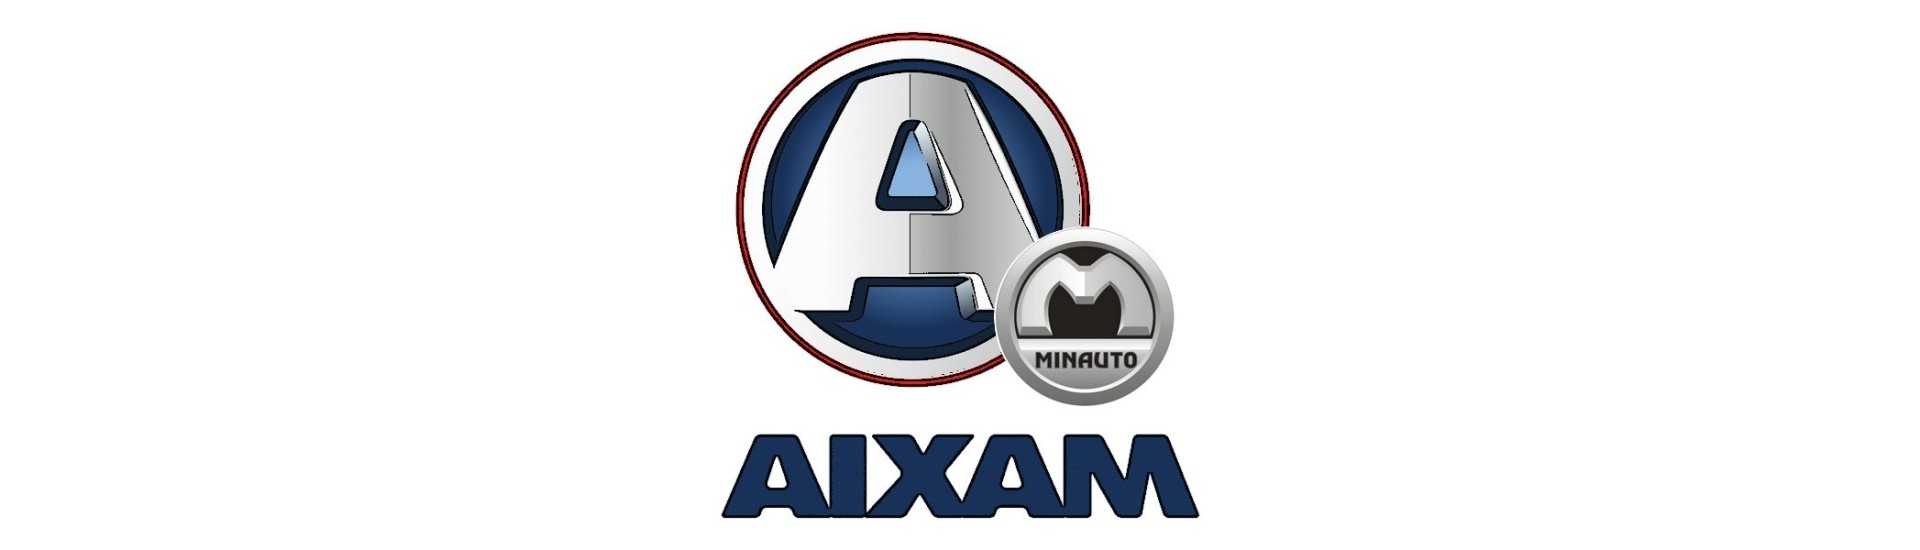 Protecţia sunetului motor la cel mai bun preţ Aixam Minauto